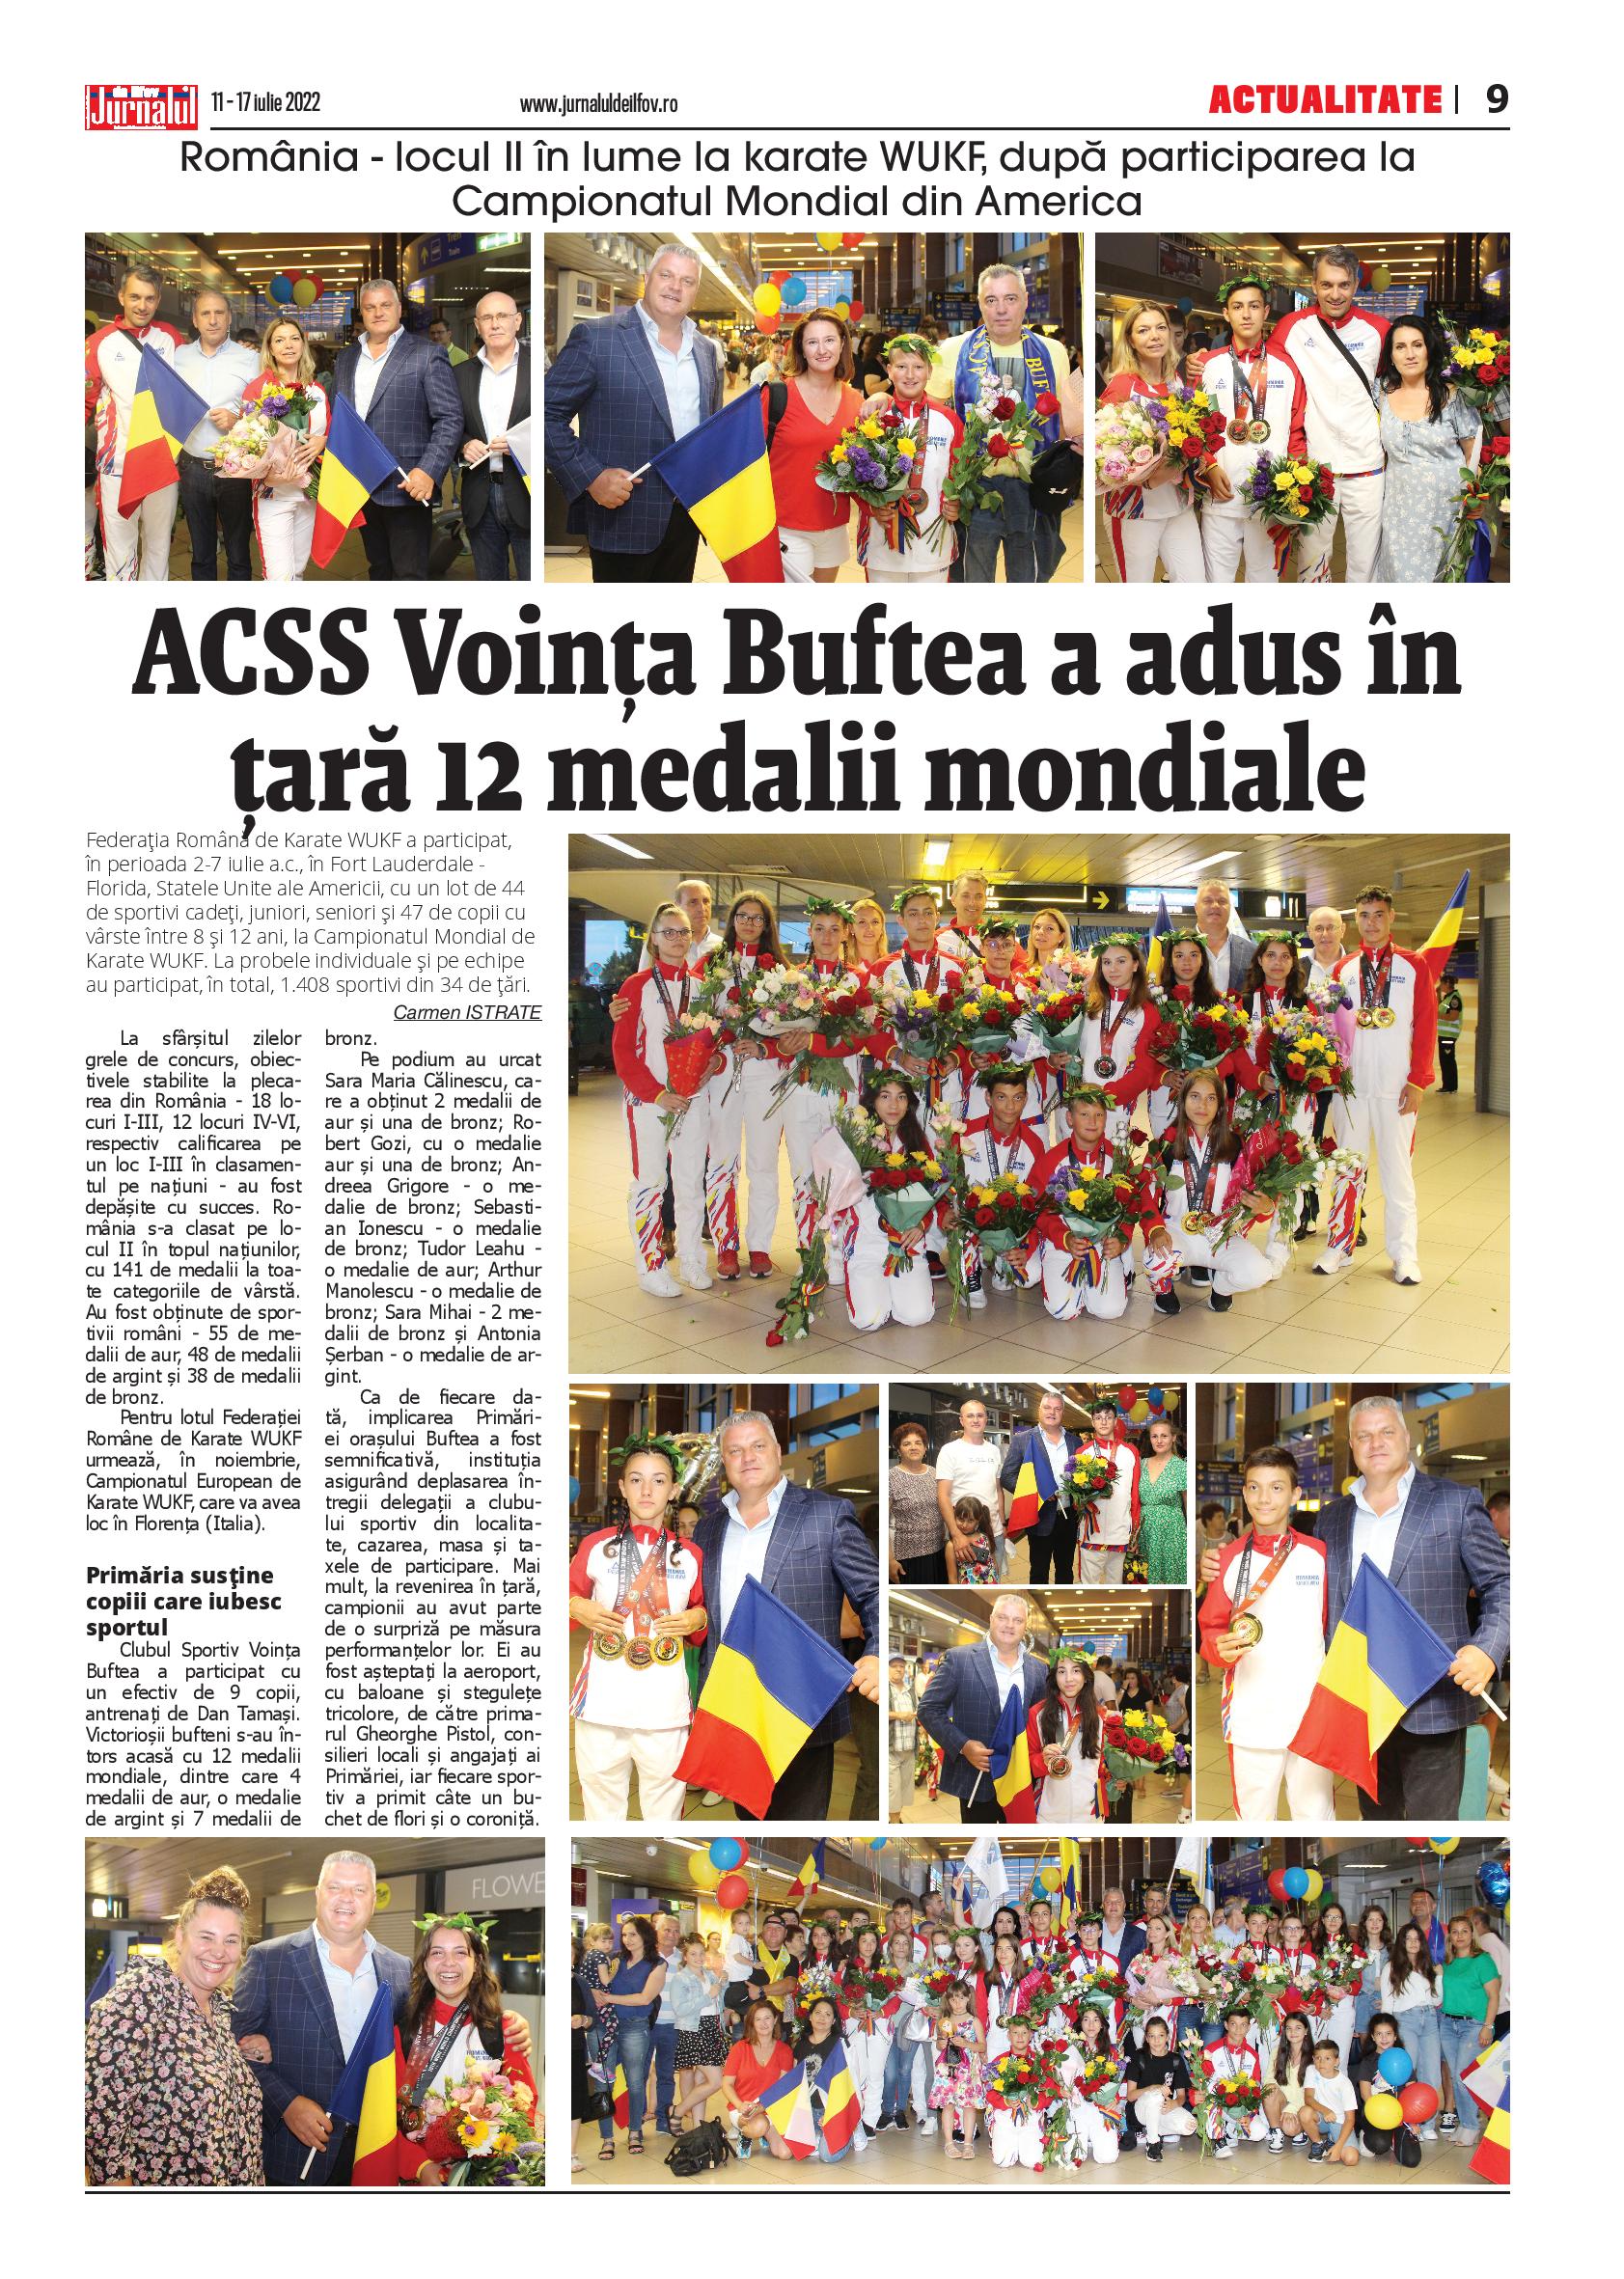 Pag. 9, Actualitate, ACSS Voinţa Buftea a adus în ţară 12 medalii mondiale